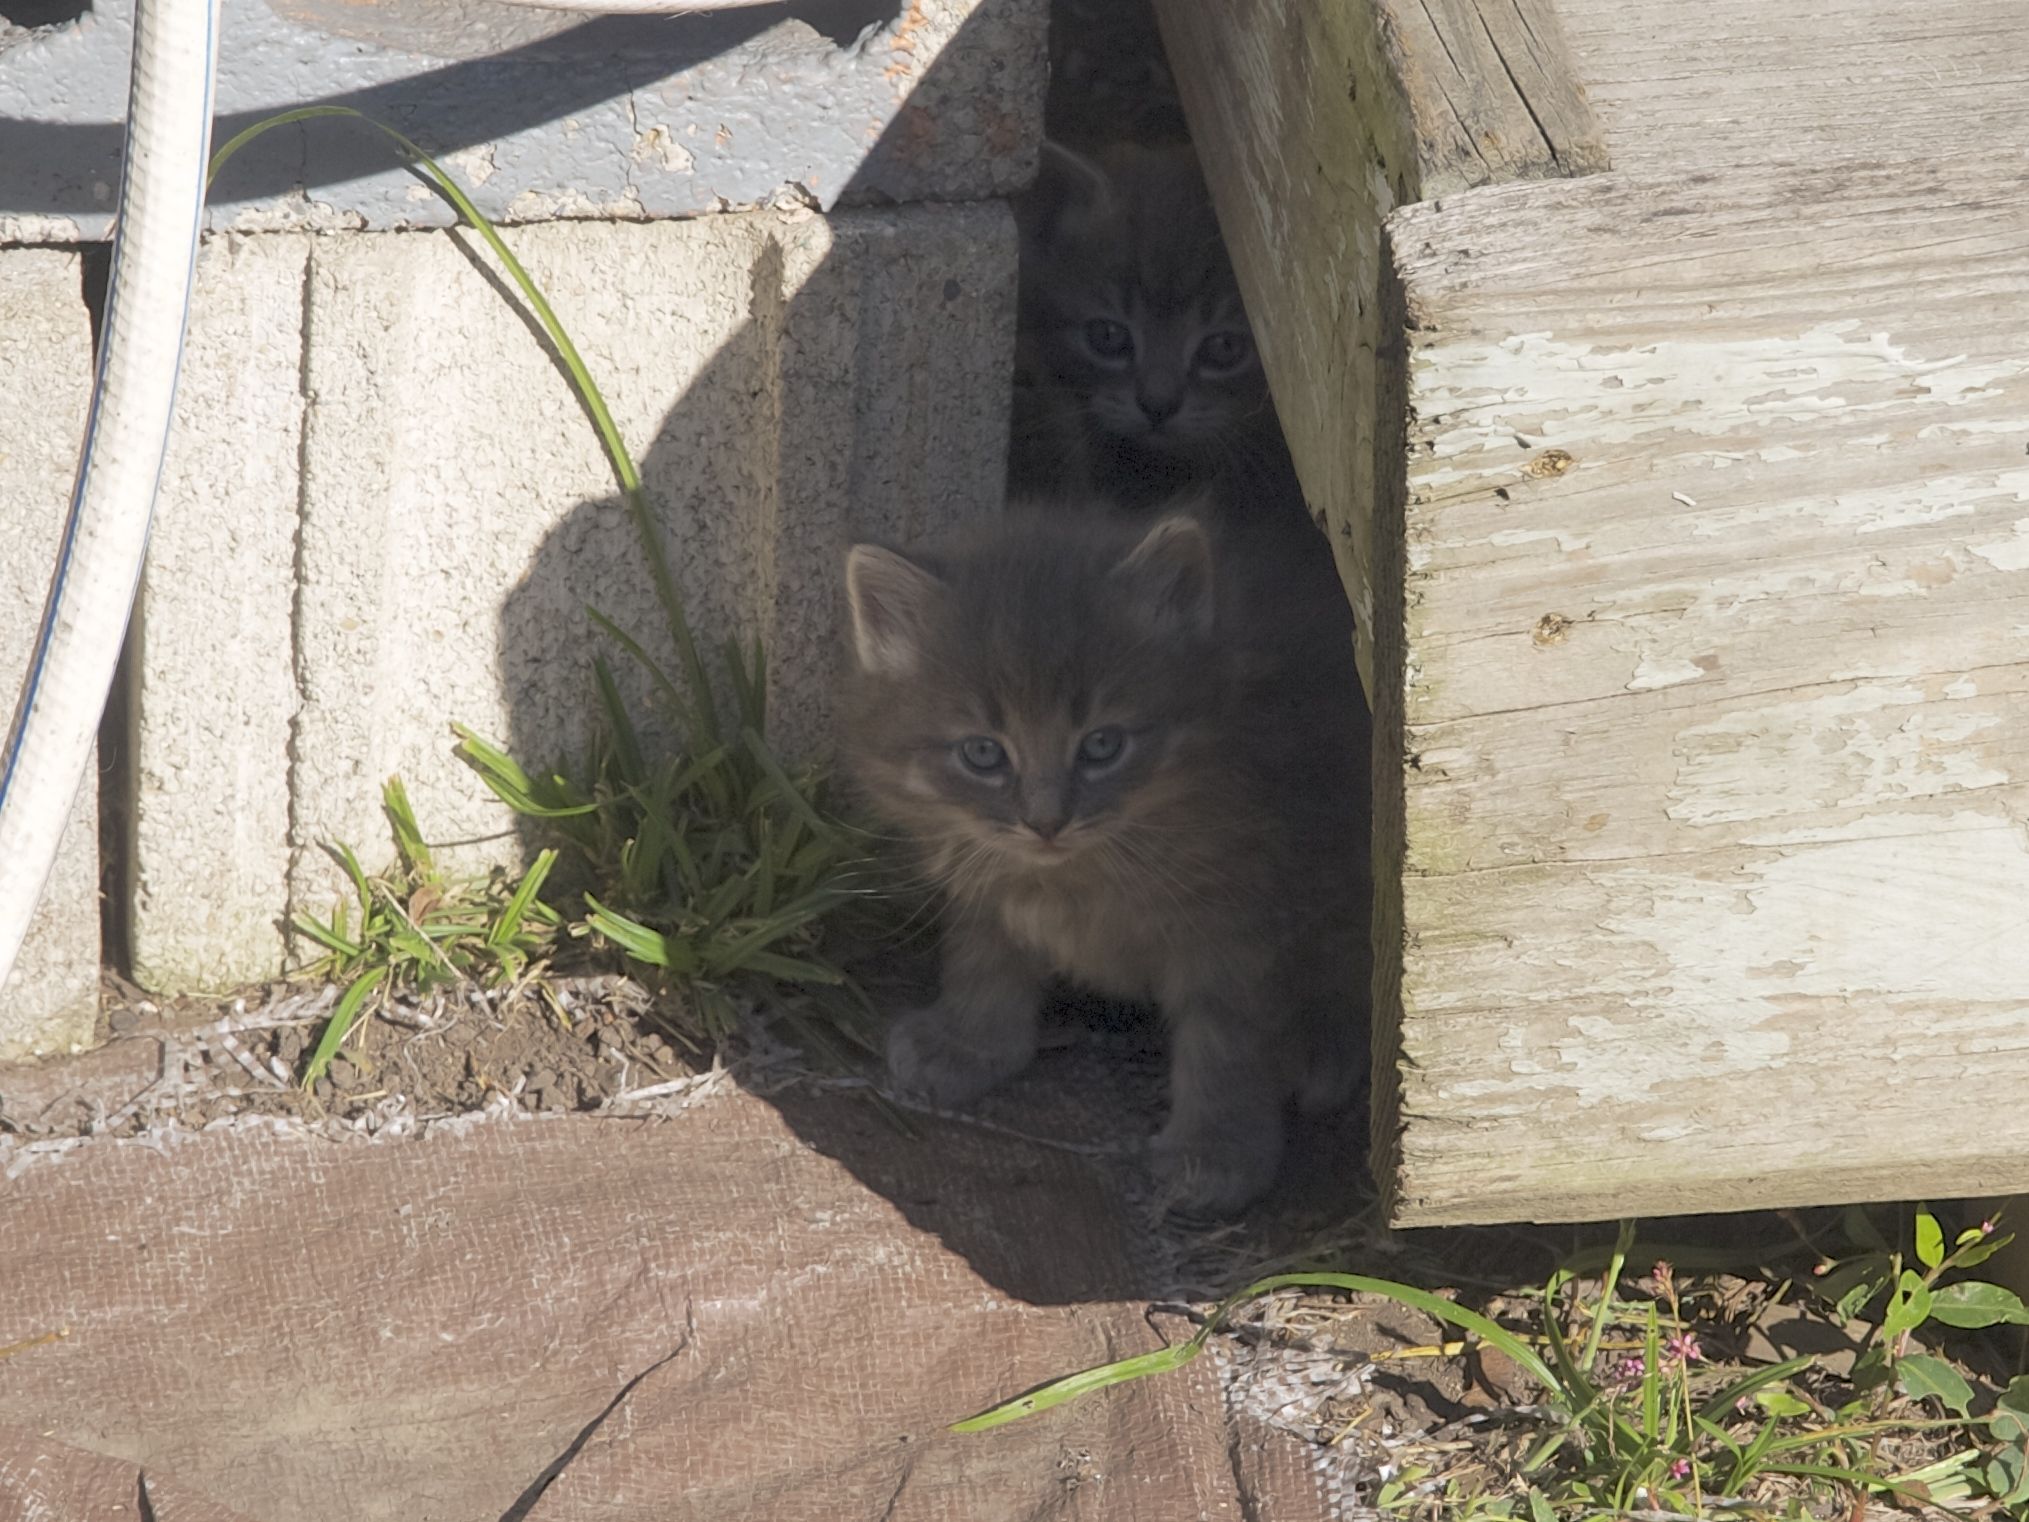 Kittens under the deck